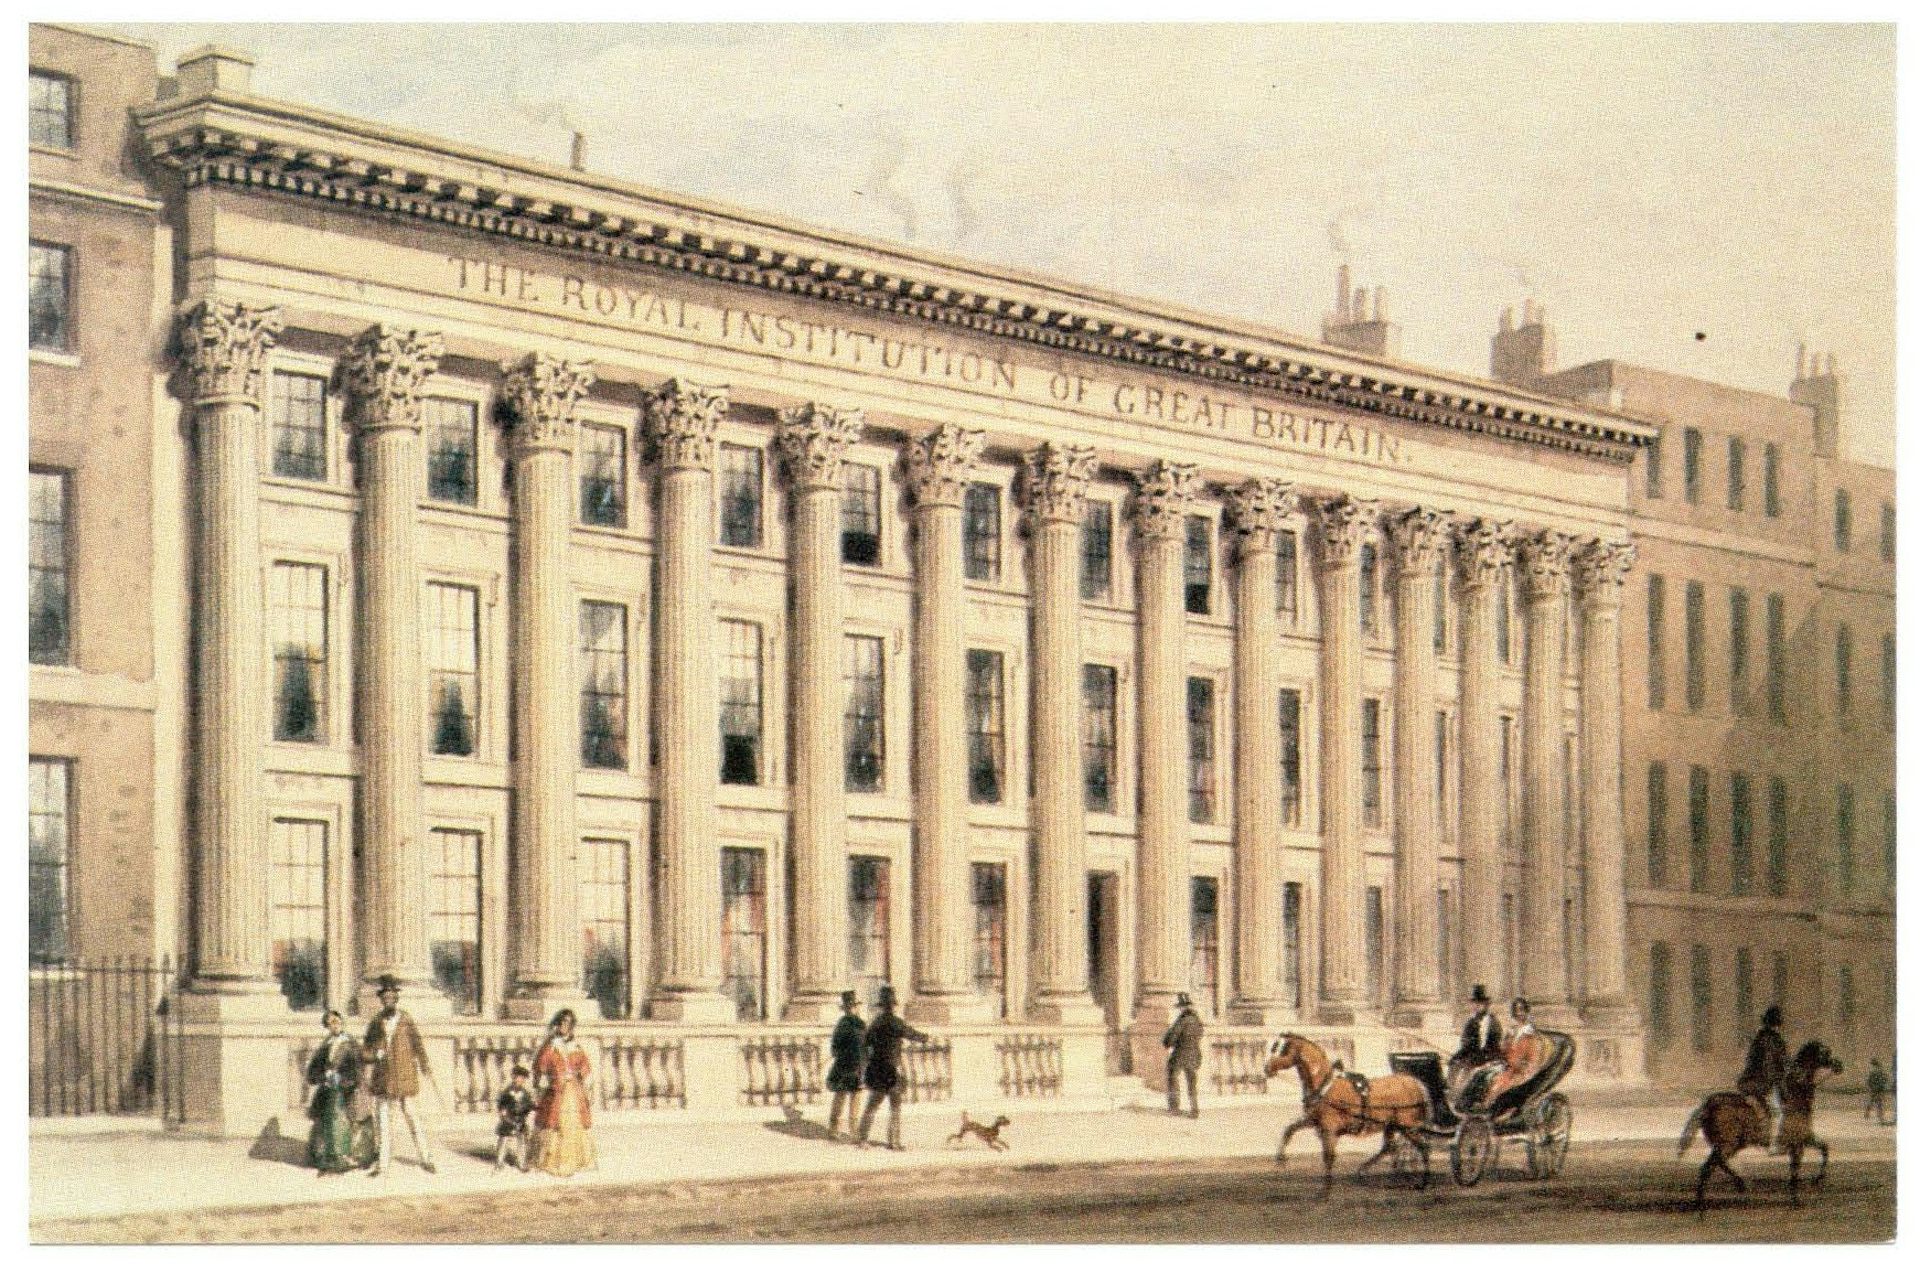 Gemälde des neoklassizistischen Royal Institution Building in London.